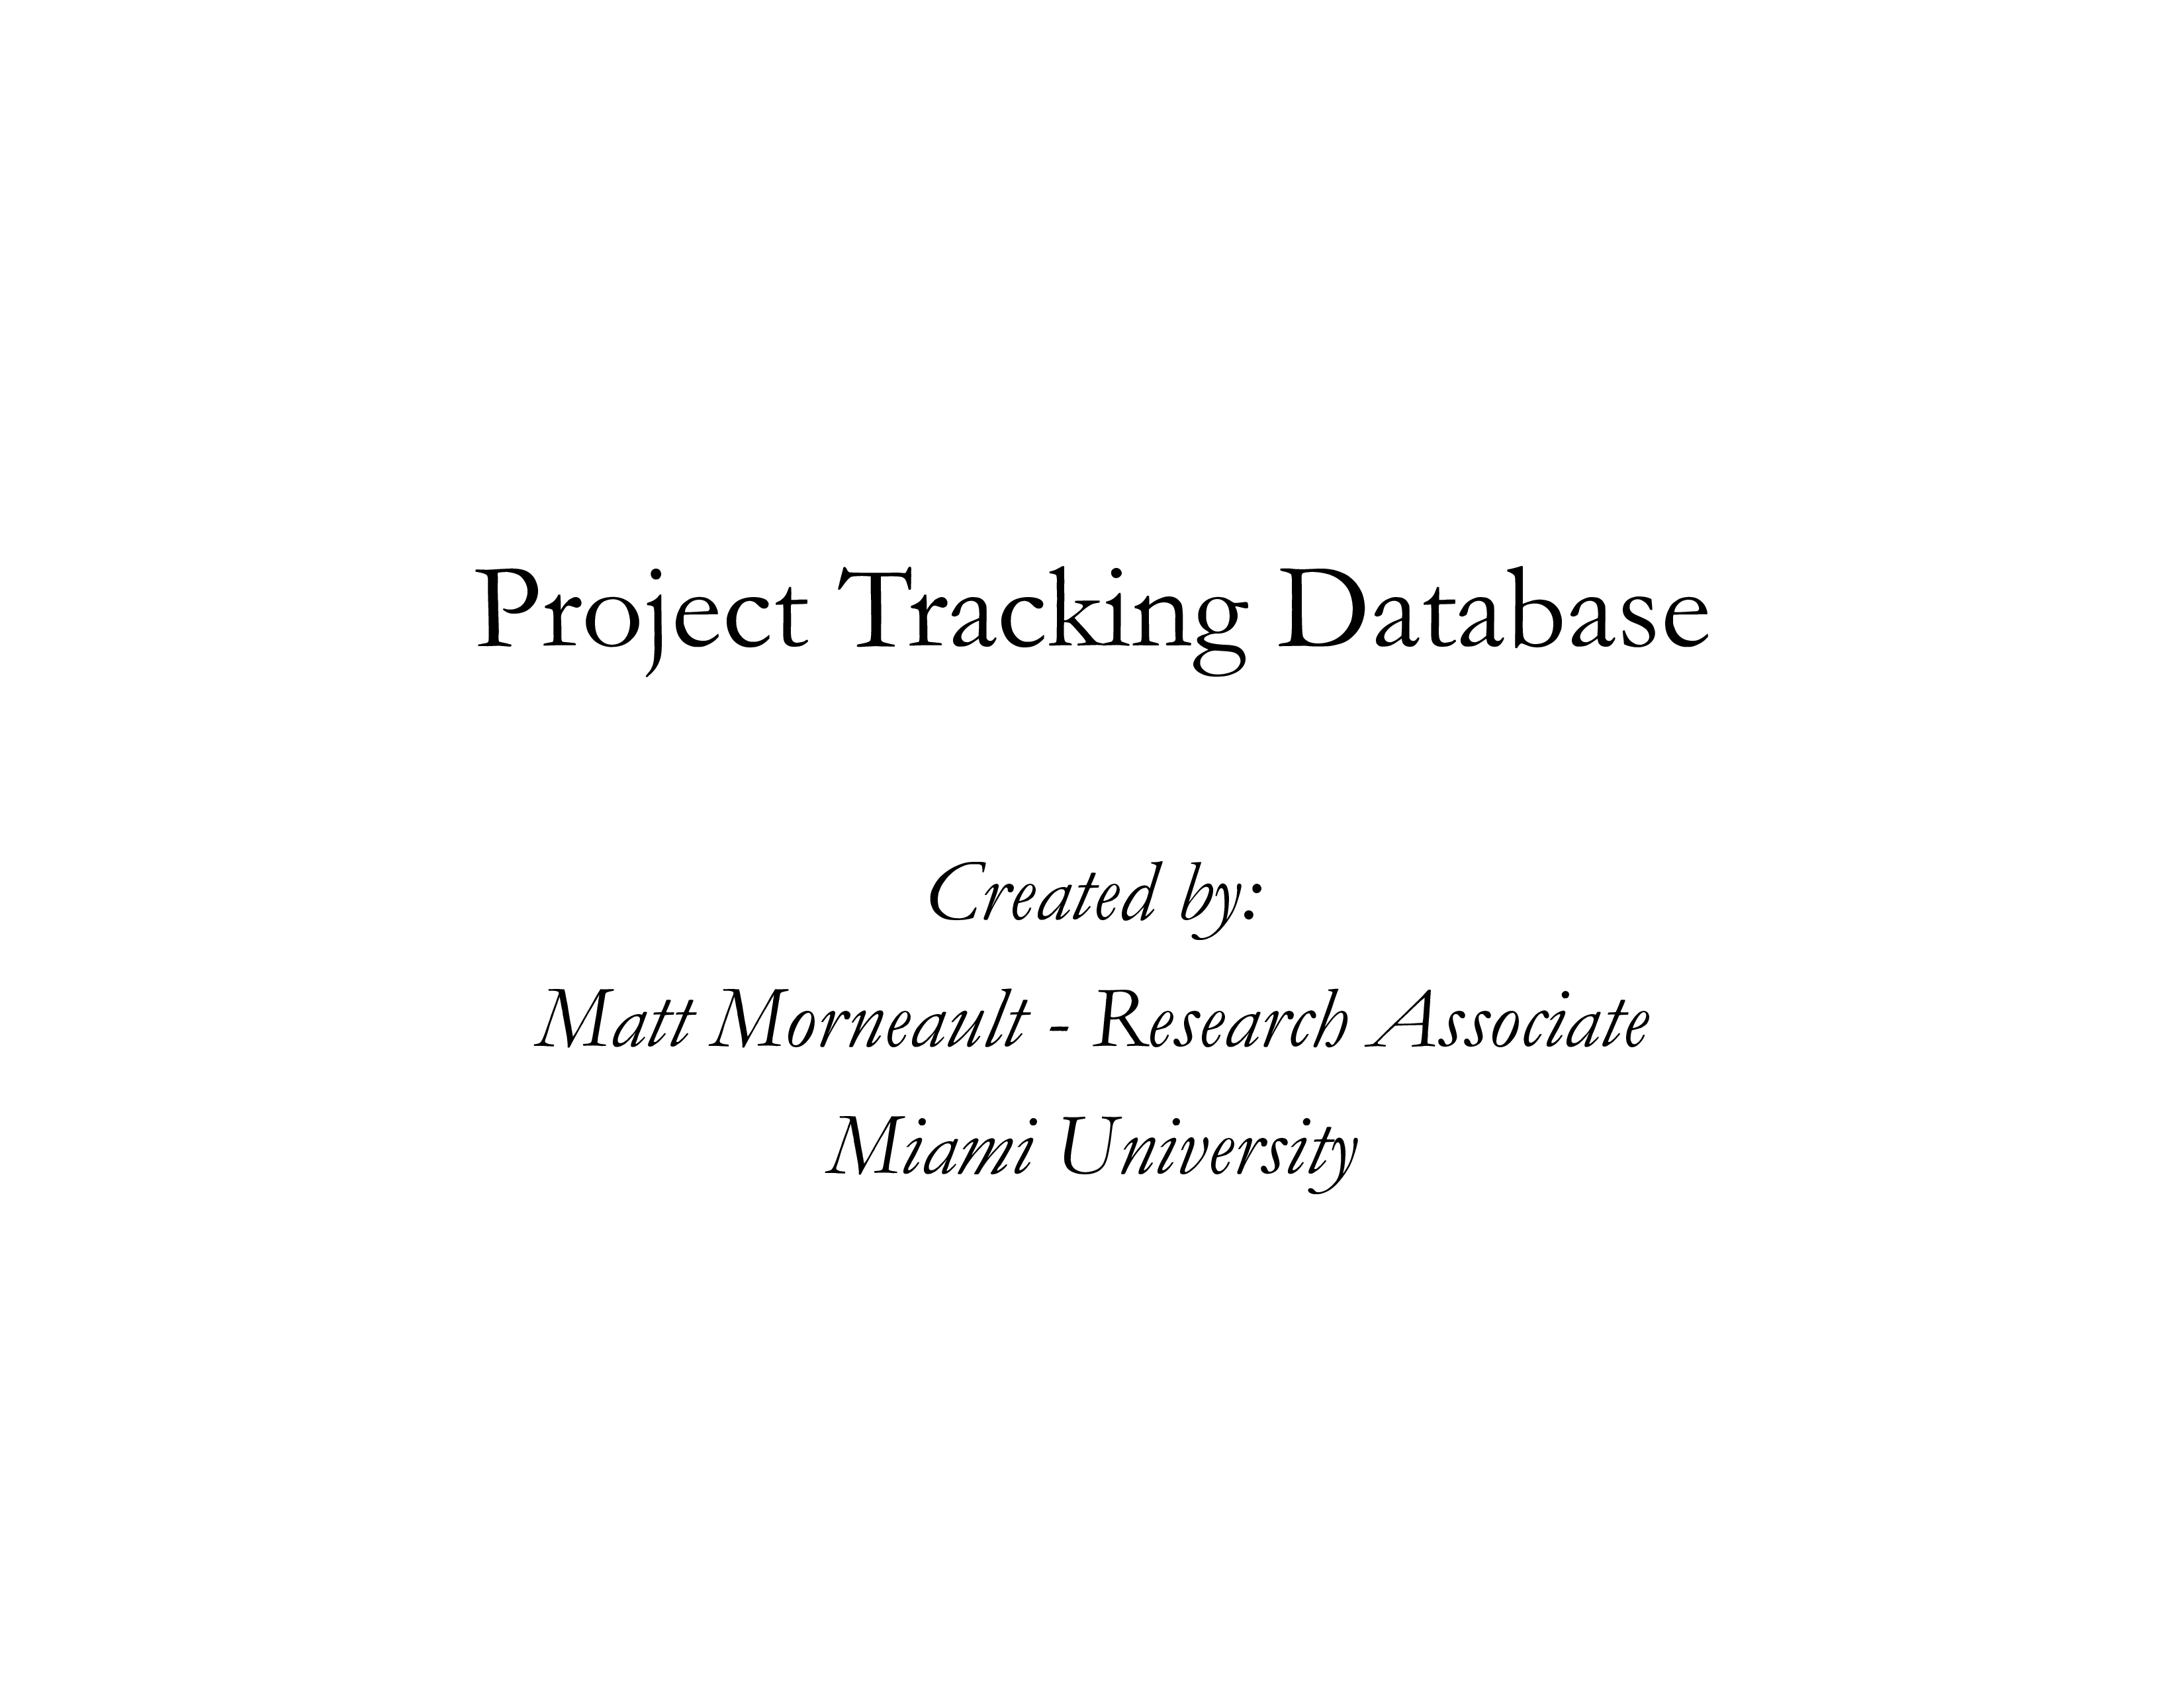 Project Tracking Database main image